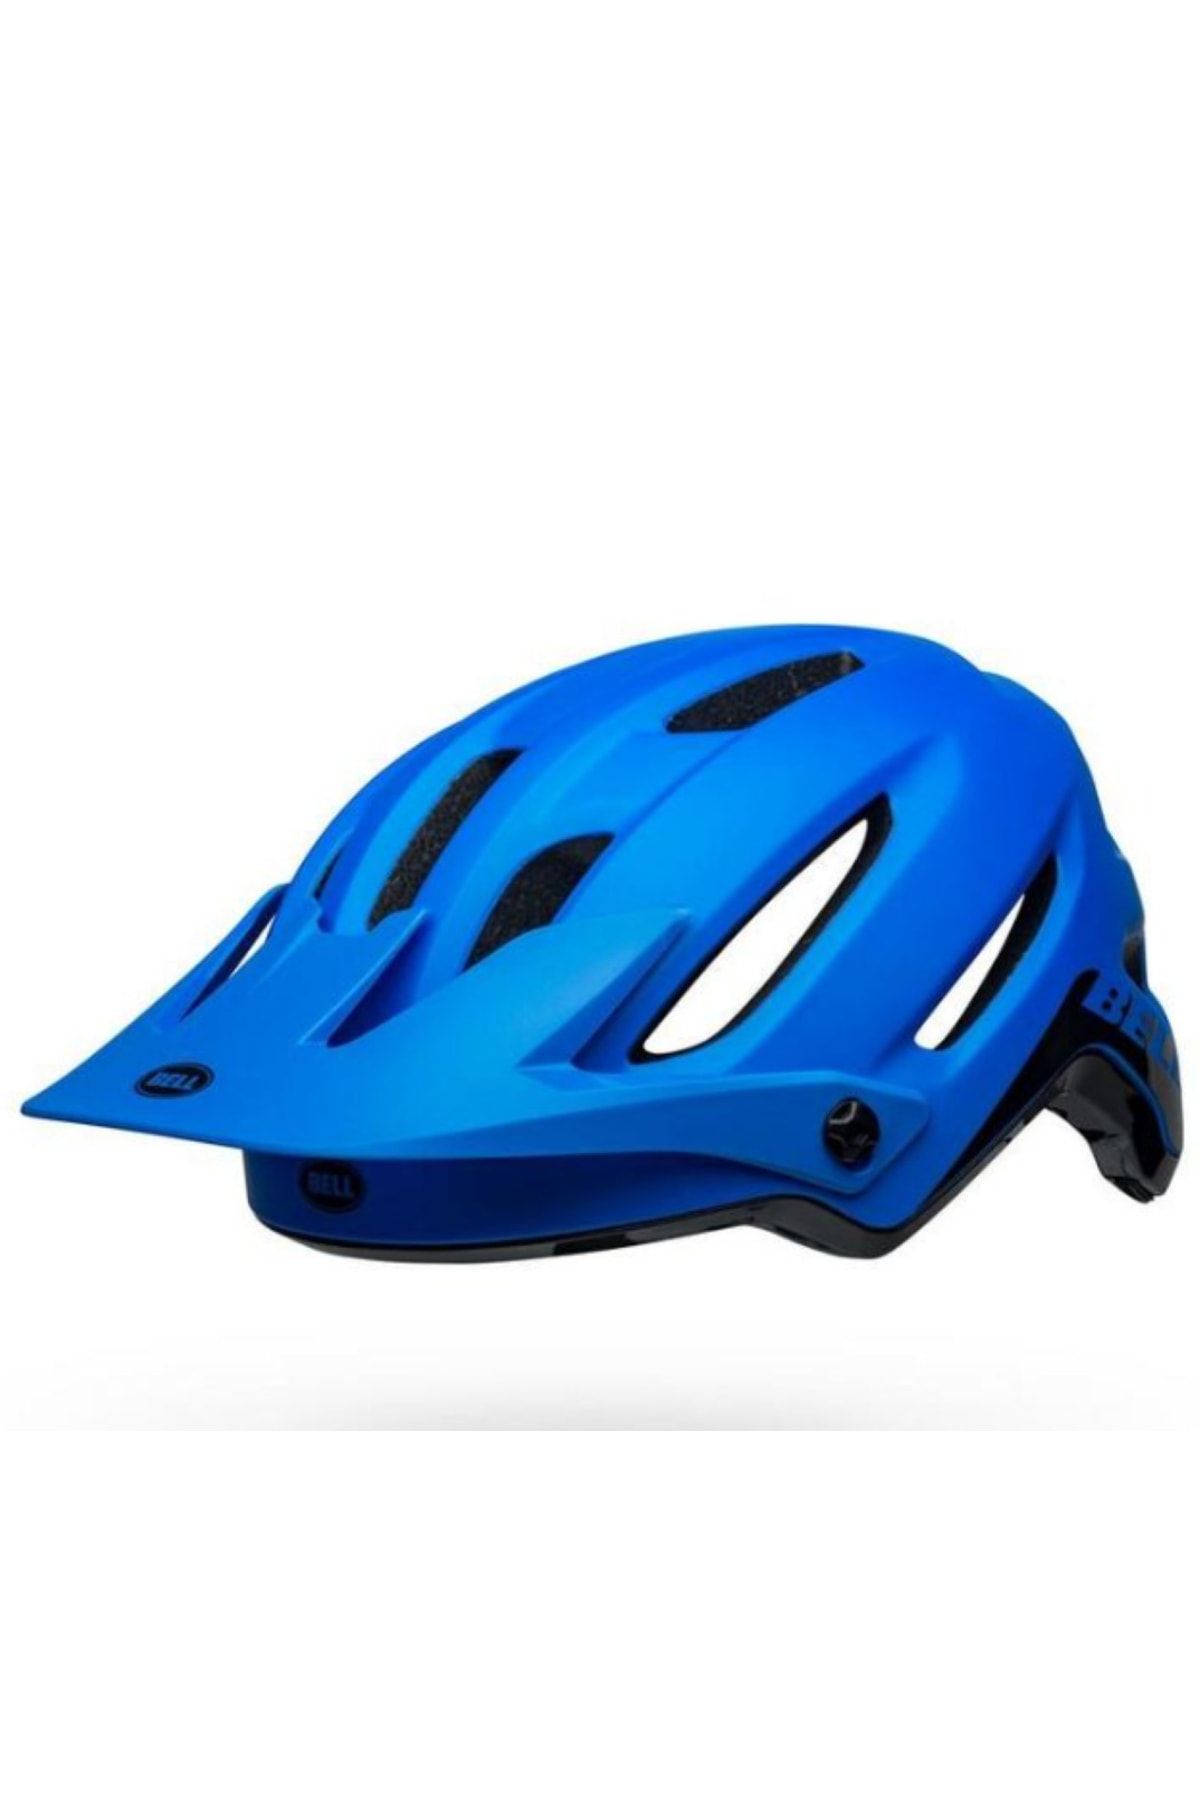 Bell 4forty Enduro Dağ Bisikleti Kaskı Bisiklet Kask (58 - 62cm) Mavi